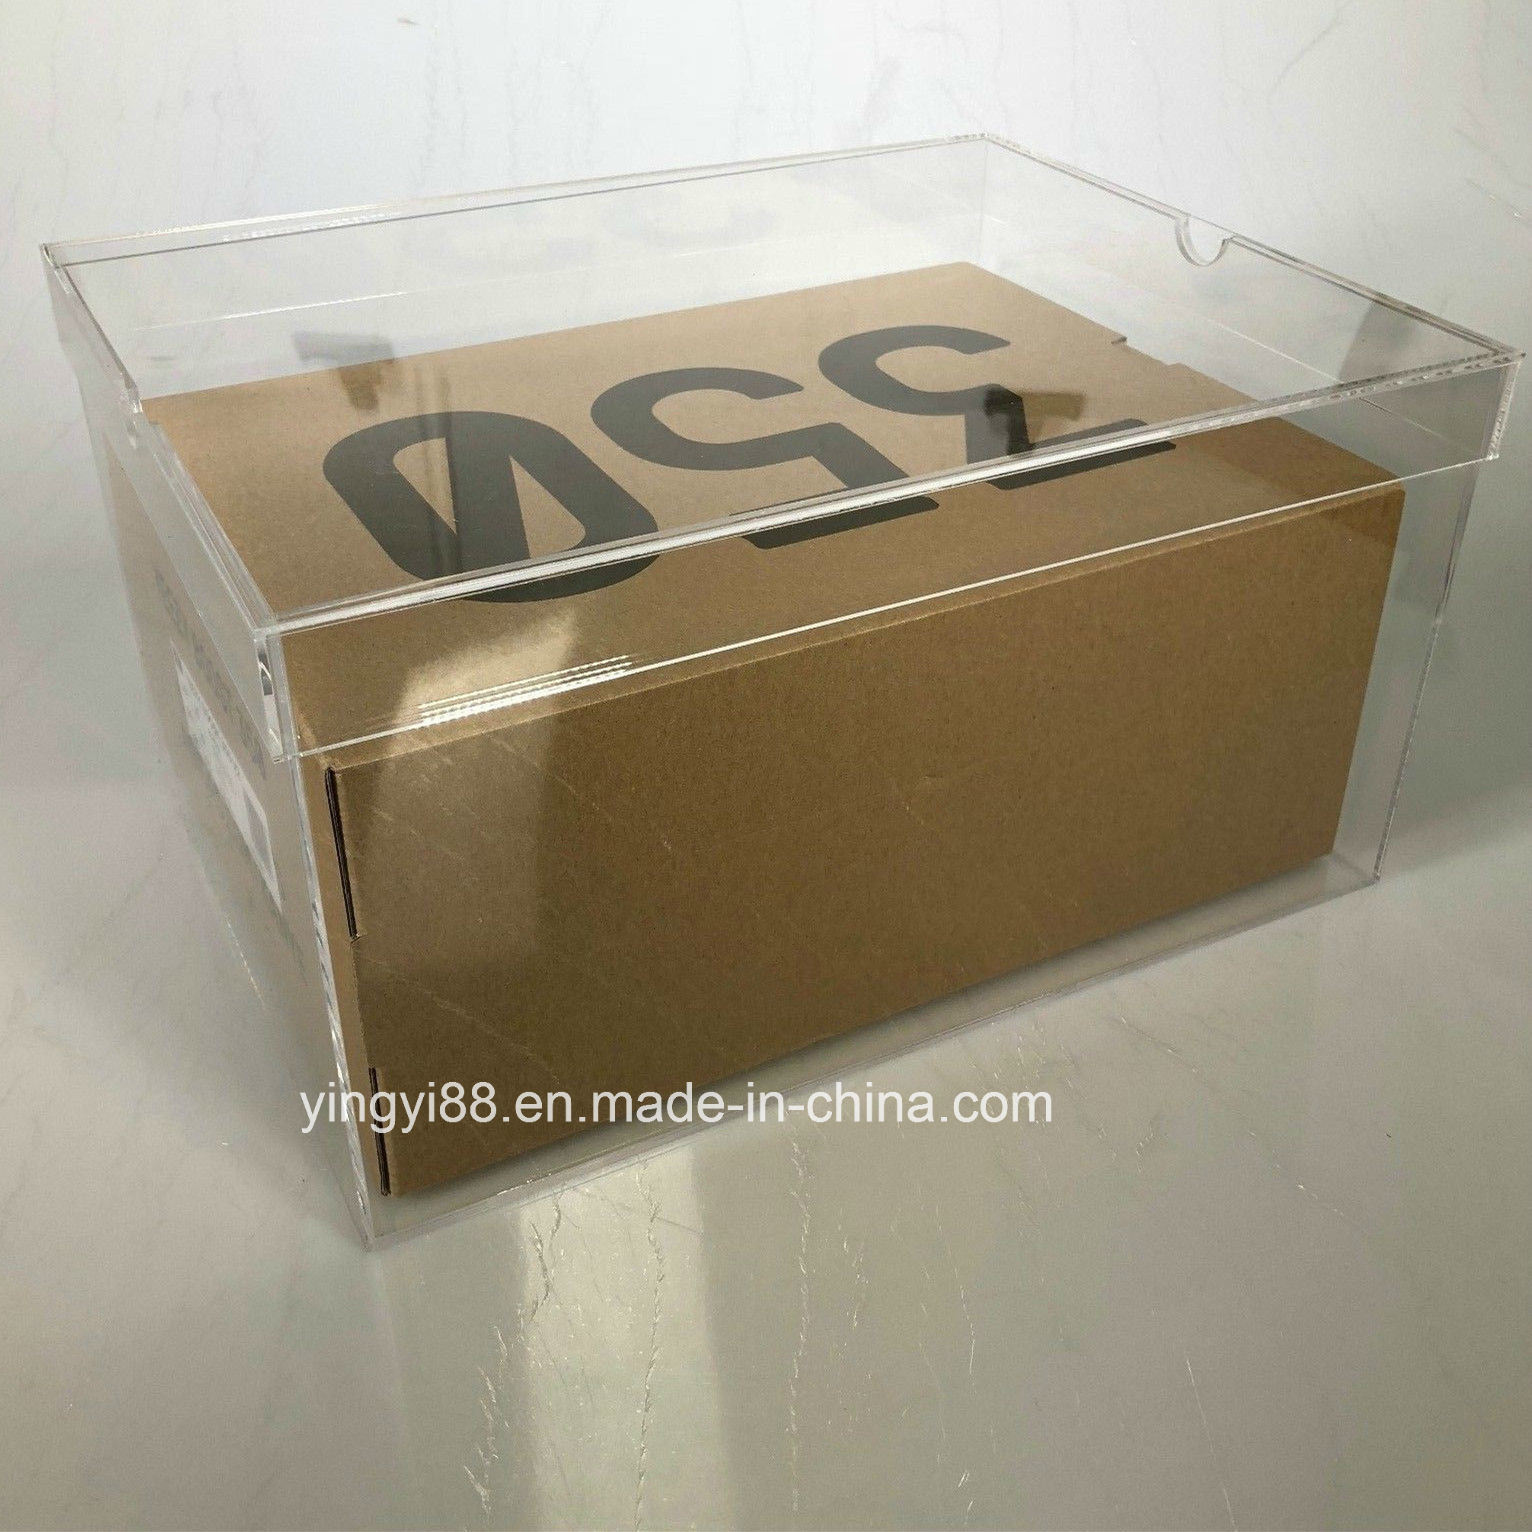 /proimages/2f0j00DycTLBYJhPul/wholesale-luxury-acrylic-giant-shoe-box.jpg